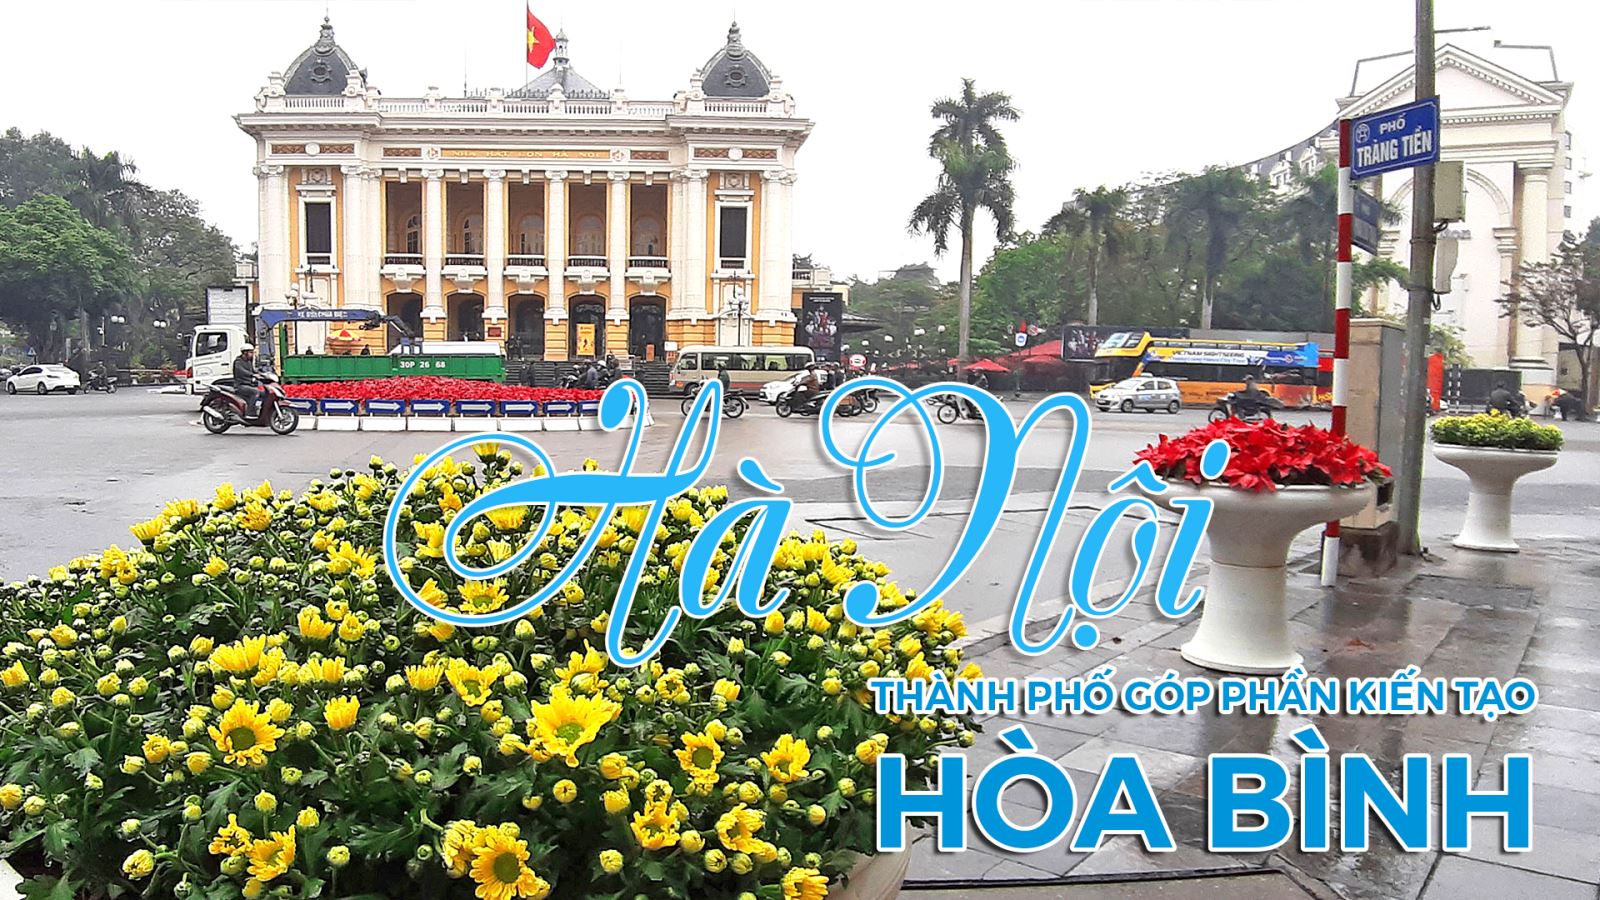 Thủ đô sáng tạo của Đông Nam Á và Hà Nội: Hà Nội đã trở thành một trong những thủ đô phát triển và sáng tạo nhất của Đông Nam Á. Với nhiều công trình kiến trúc độc đáo, các chợ đêm sầm uất, khu phố cổ phong phú và sự phát triển của ngành công nghiệp đồng hồ, Hà Nội đang trở thành một điểm đến không thể bỏ qua đối với du khách các nước trong khu vực và trên thế giới.